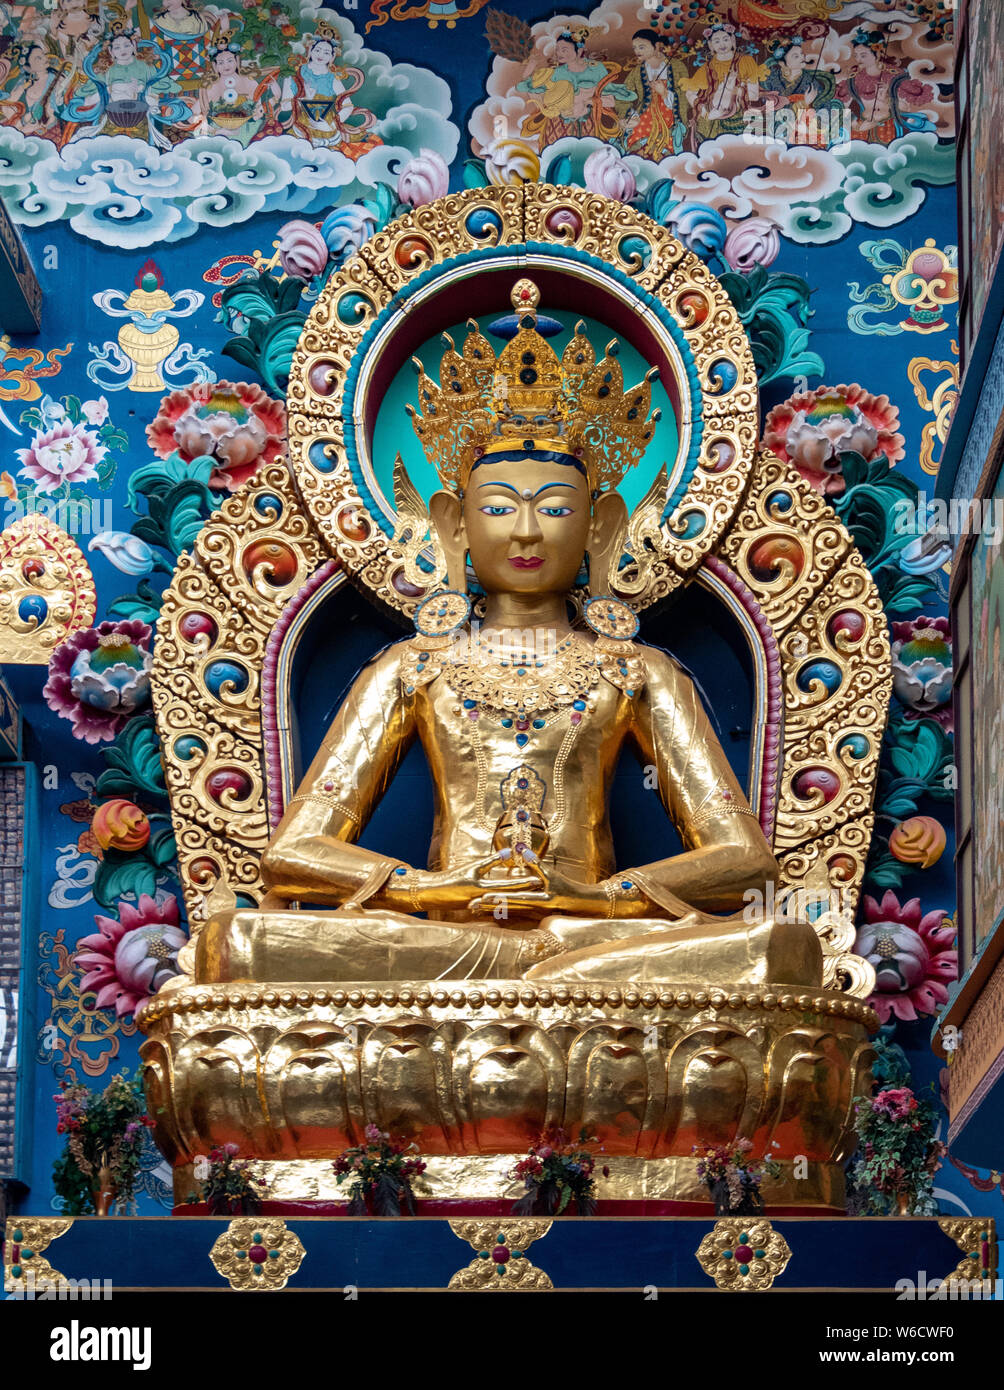 El Monasterio Namdroling Nyingmapa es el mayor centro de enseñanza del linaje Nyingma del budismo tibetano en el mundo. Foto de stock